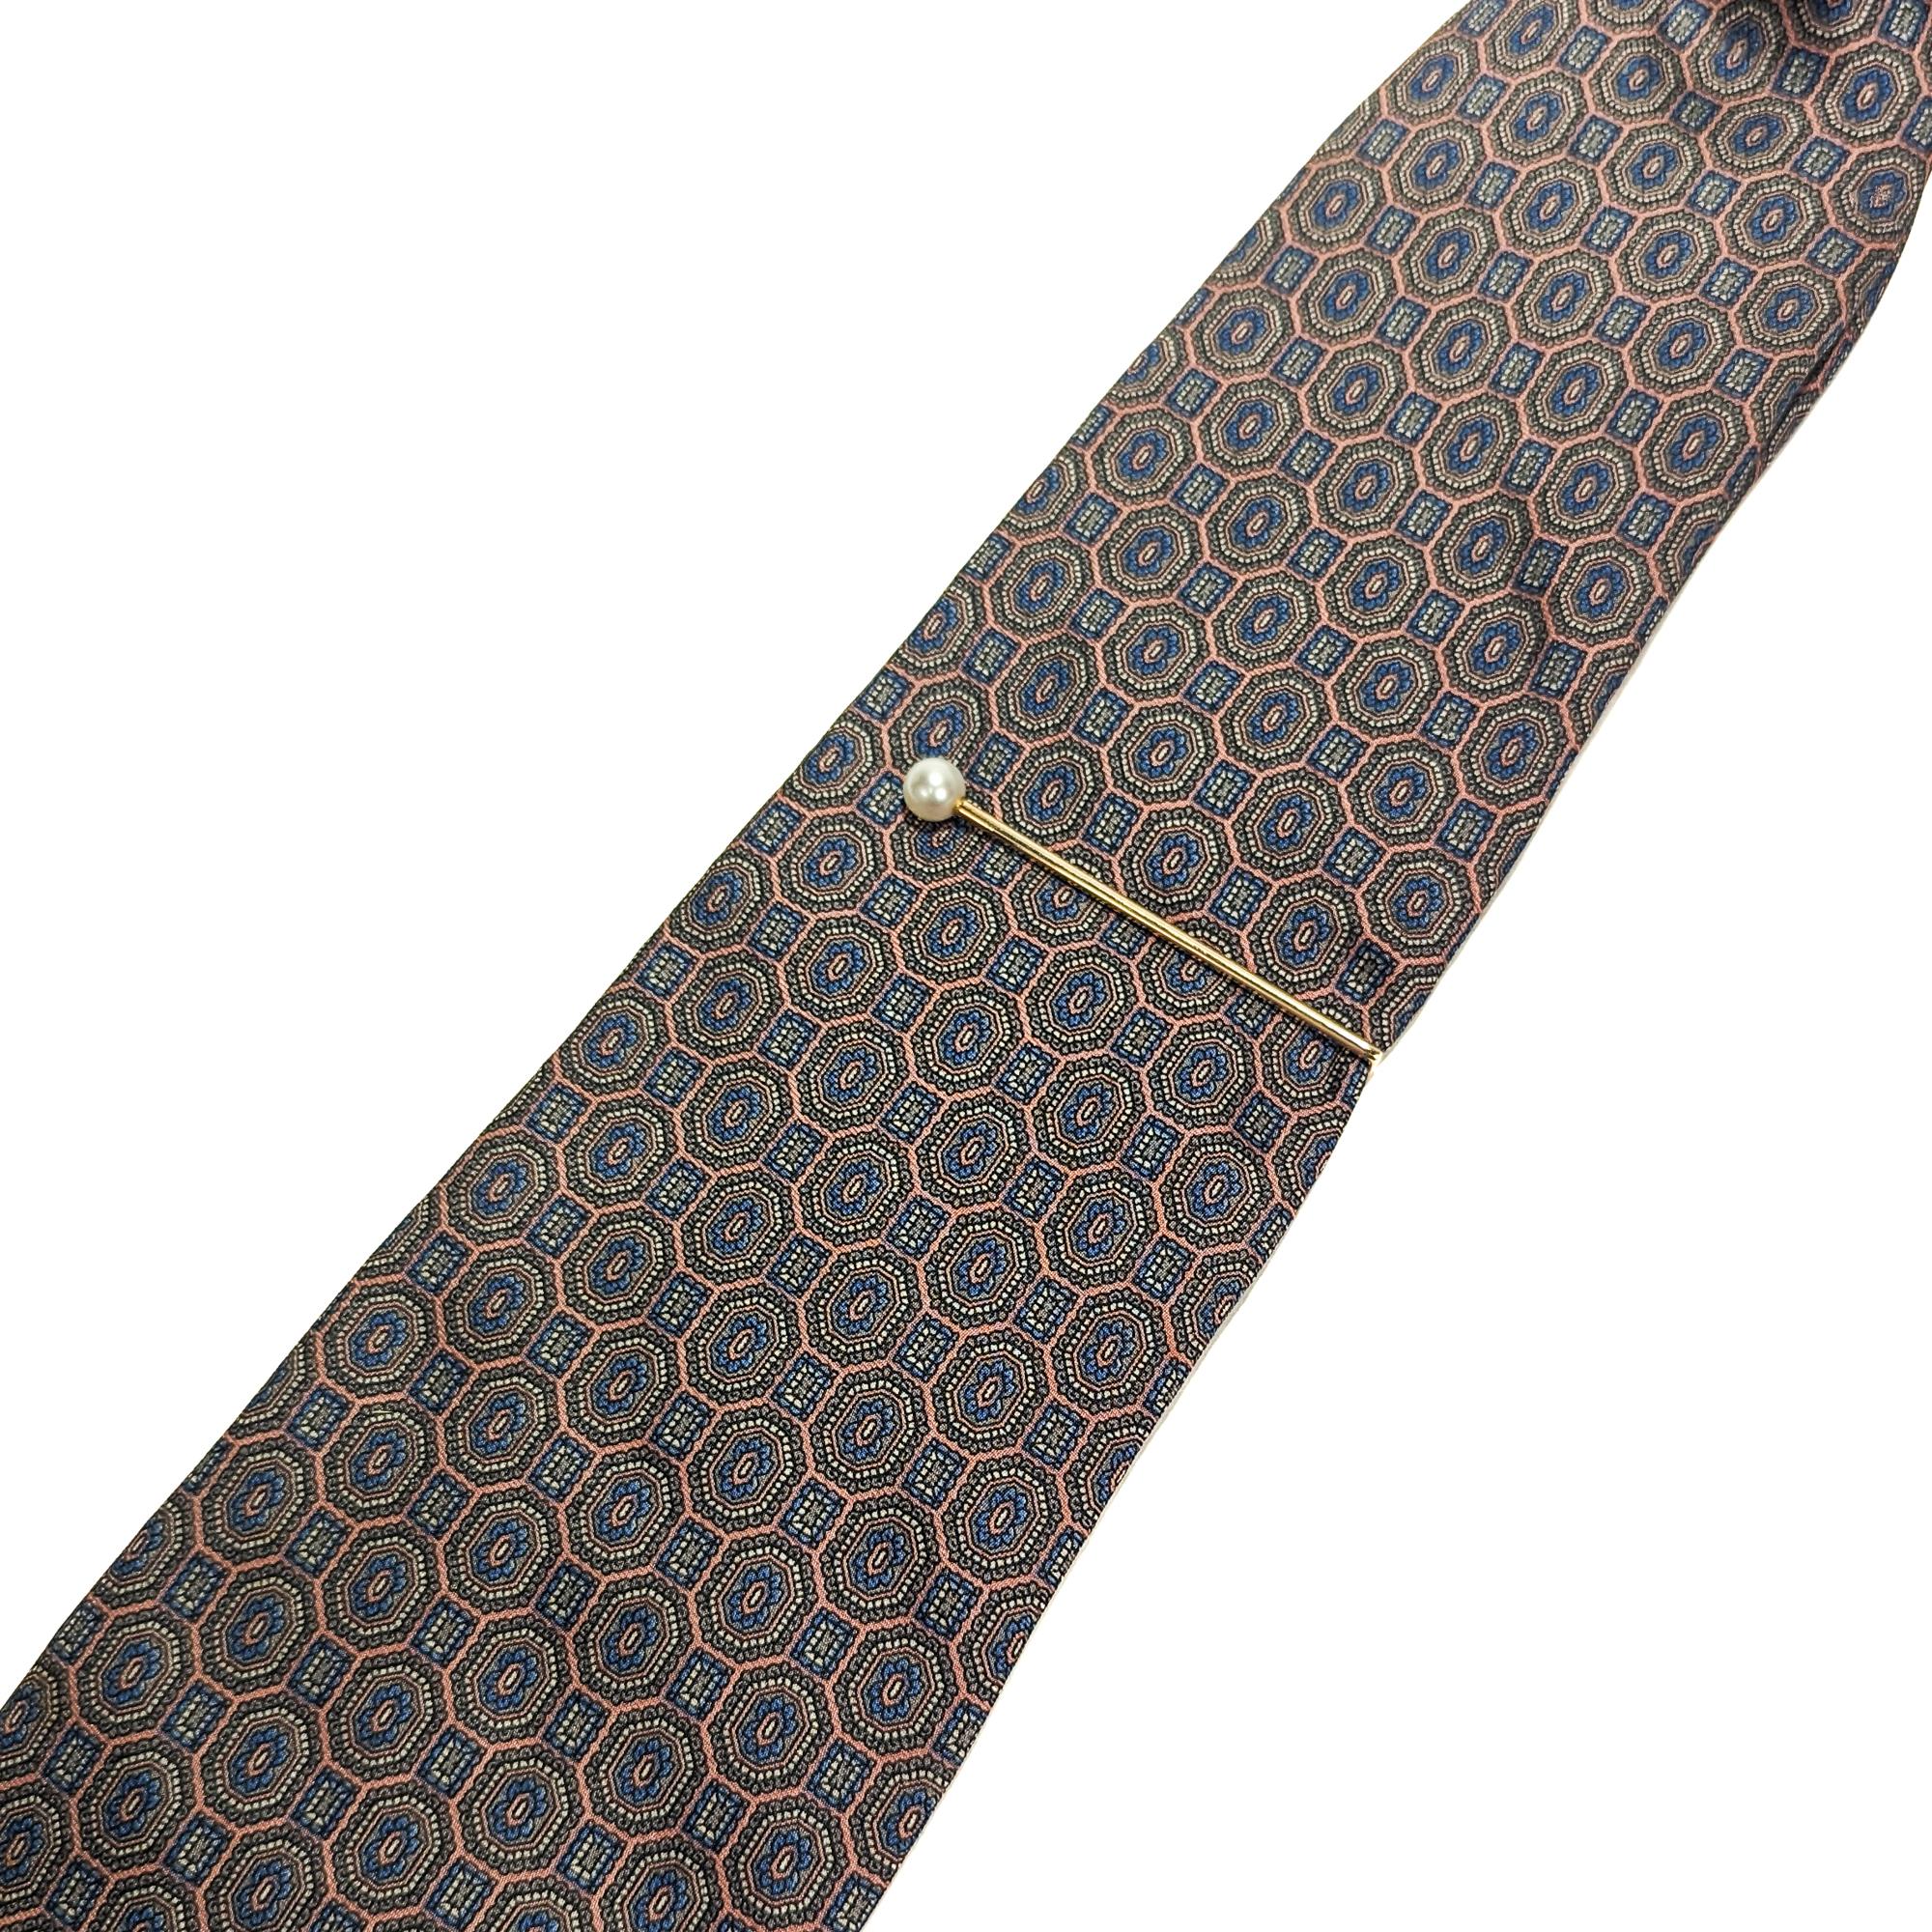 Eine schöne signierte Krawattenklammer aus der Mitte des Jahrhunderts.

Aus 14-karätigem Gold (mit einem leichten Roségoldton).

Hergestellt von Larter & Sons für Cartier. 

Sie enden mit einer runden weißen Perle.

Einfach wunderschönes Mid-Century